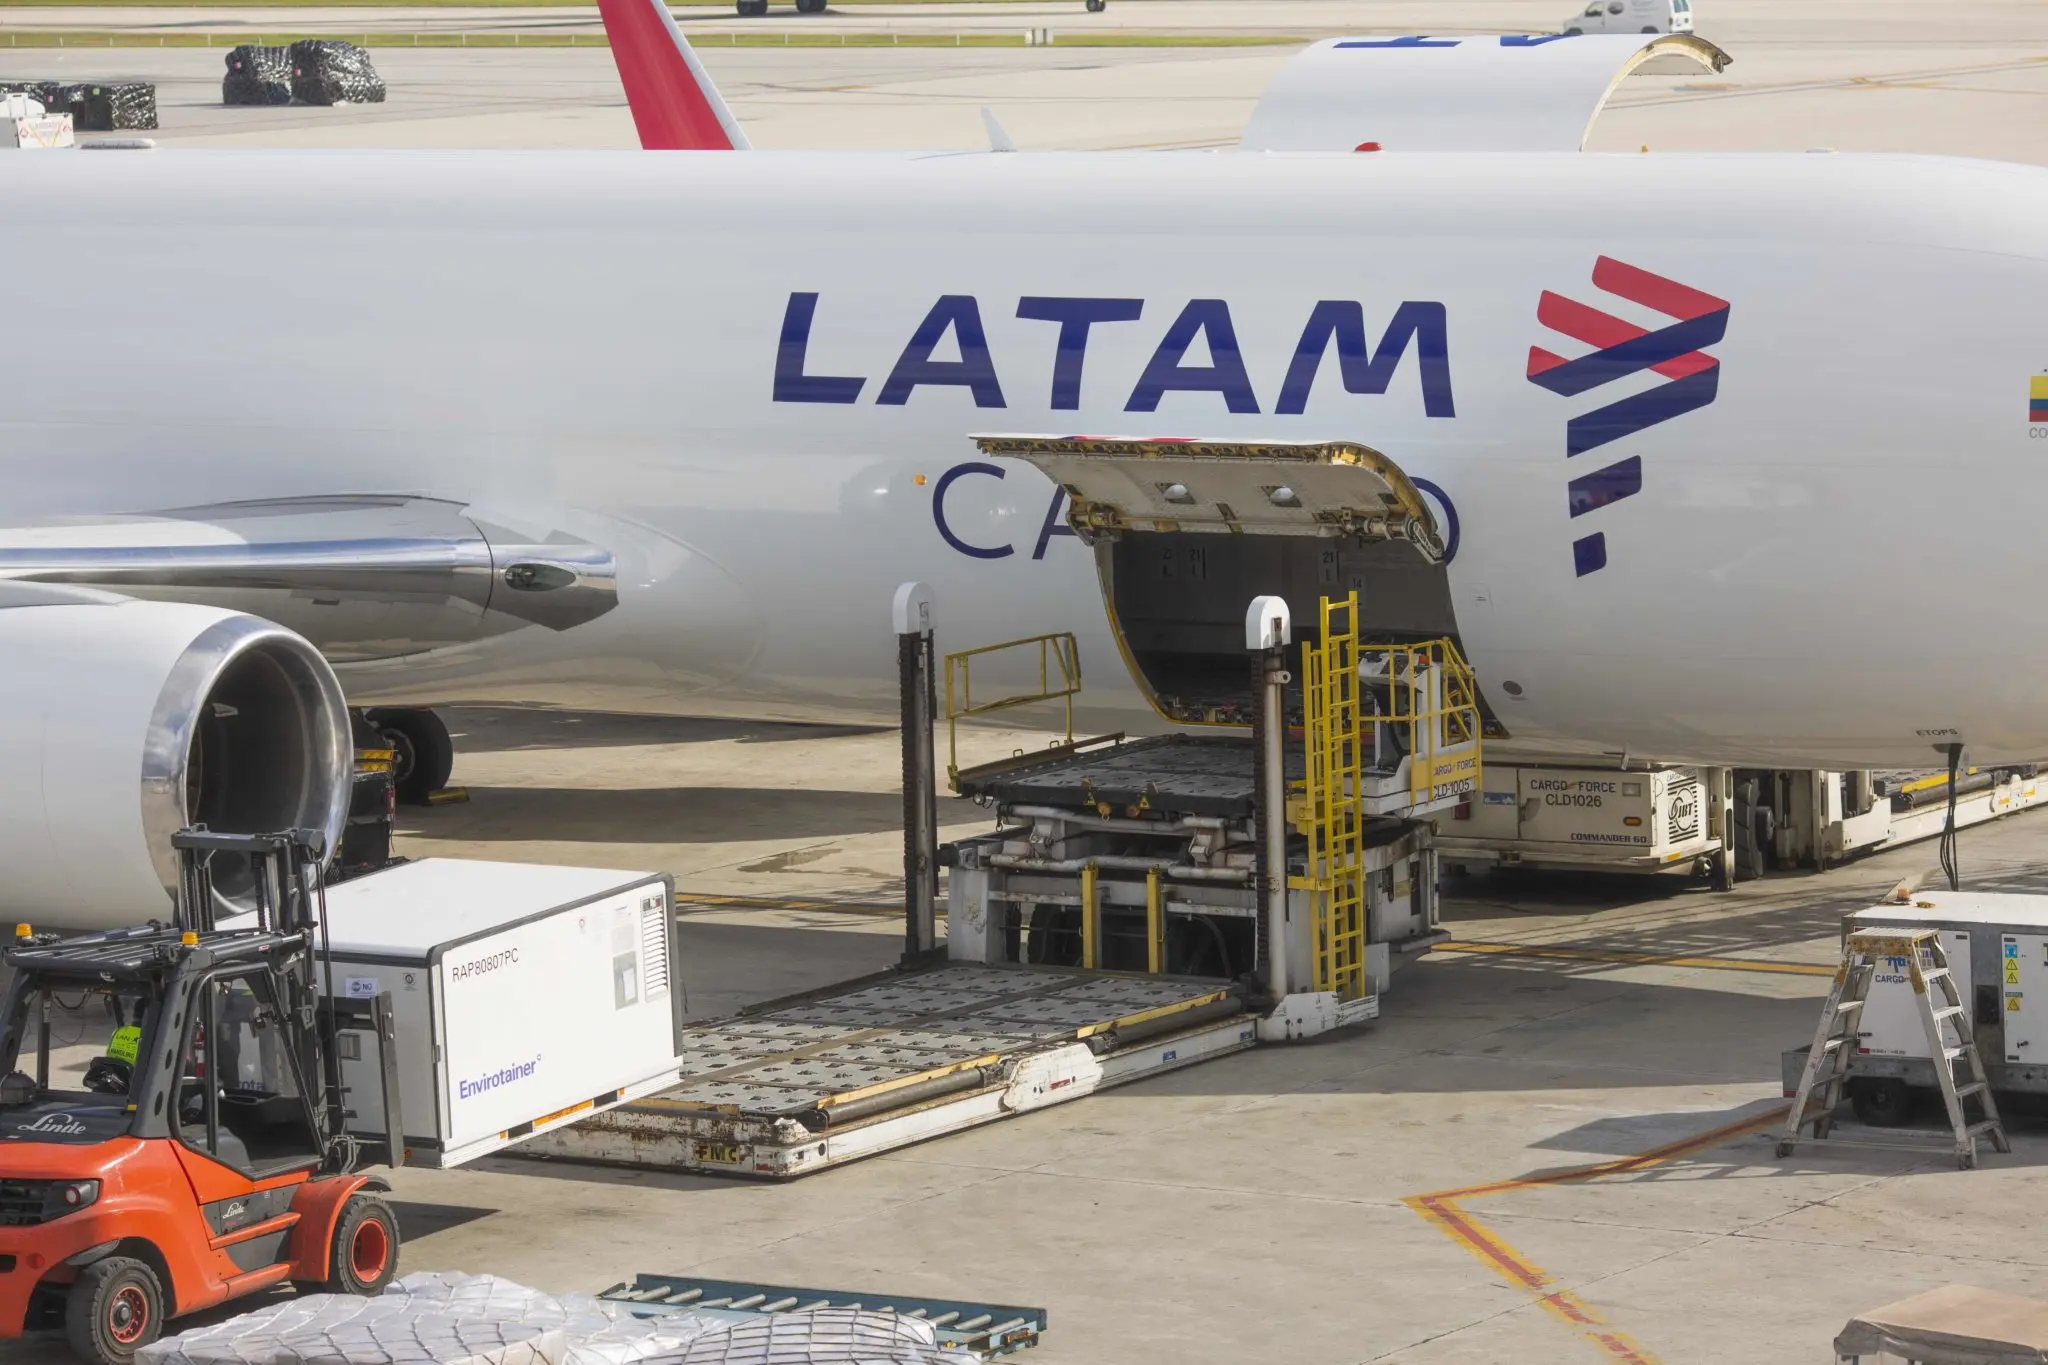 transporte de baterias de litio en aviones latam - Que no se puede llevar en un vuelo internacional